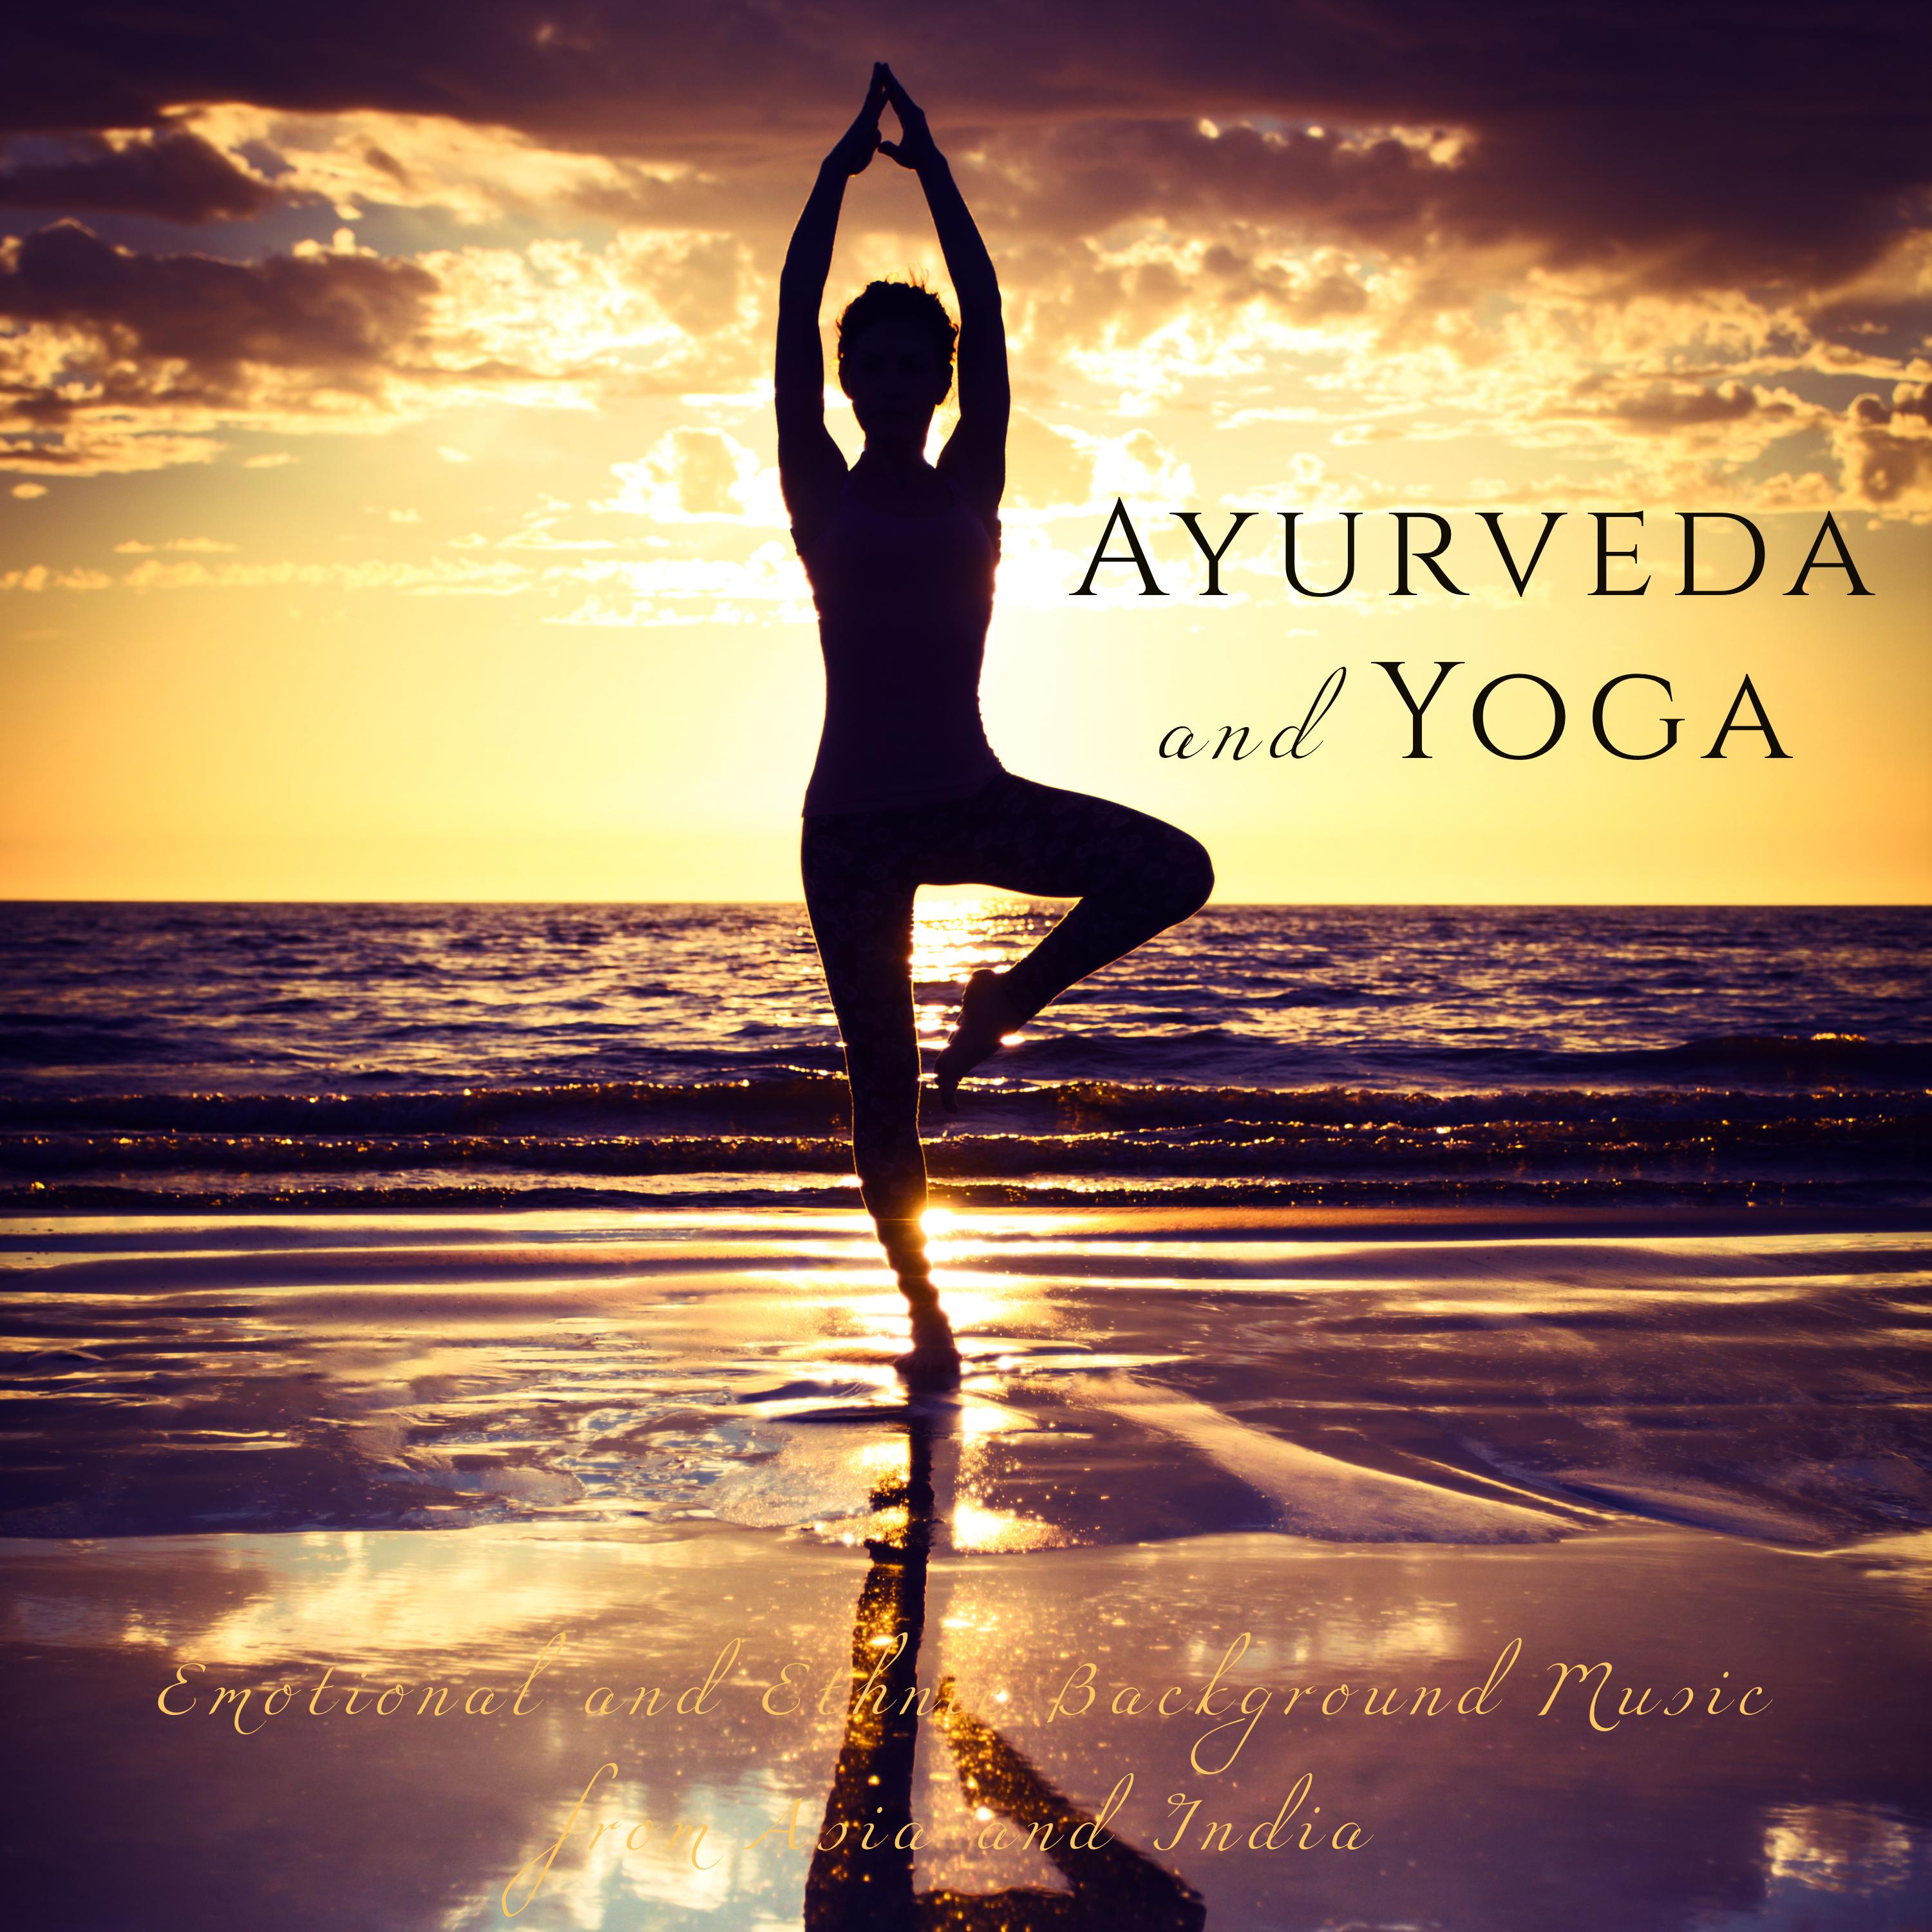 Never Too Late - Yoga Asana